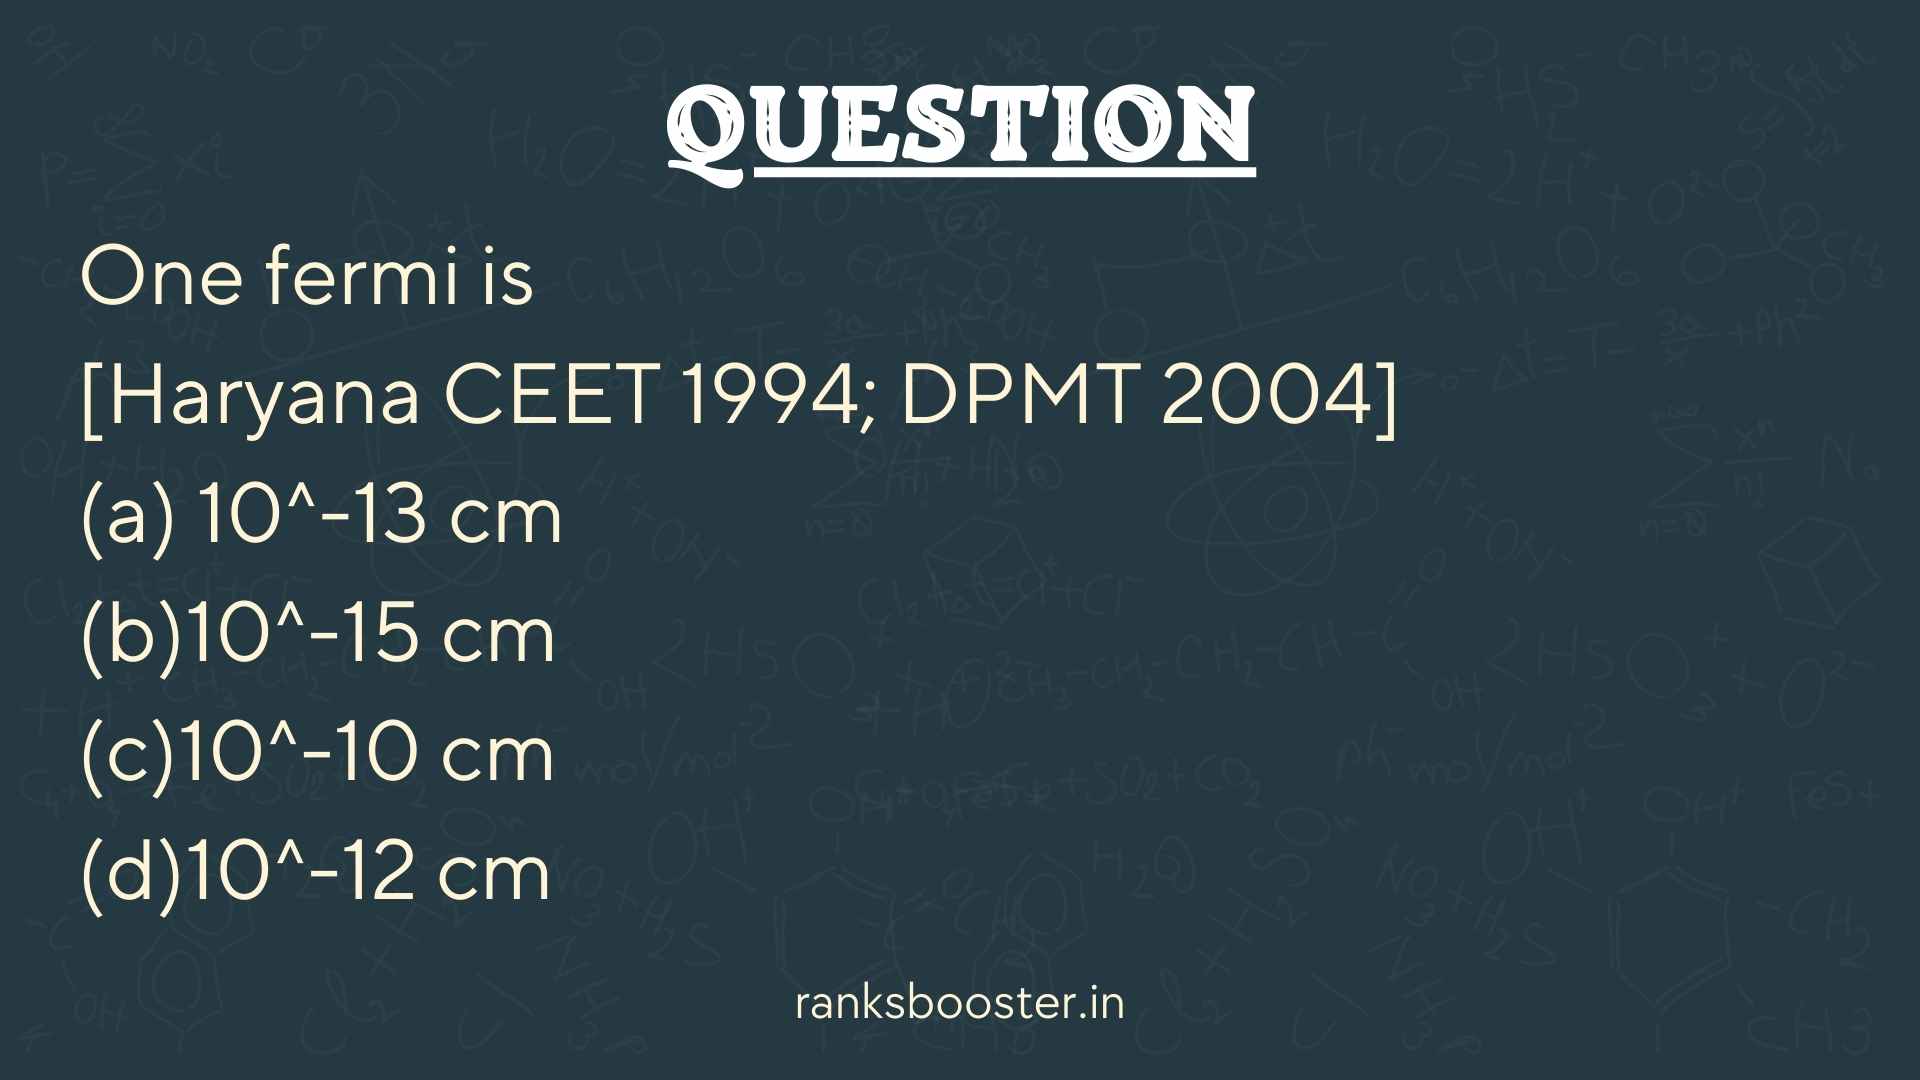 Question: One fermi is [Haryana CEET 1994; DPMT 2004] (a) 10^-13 cm (b)10^-15 cm (c)10^-10 cm (d)10^-12 cm